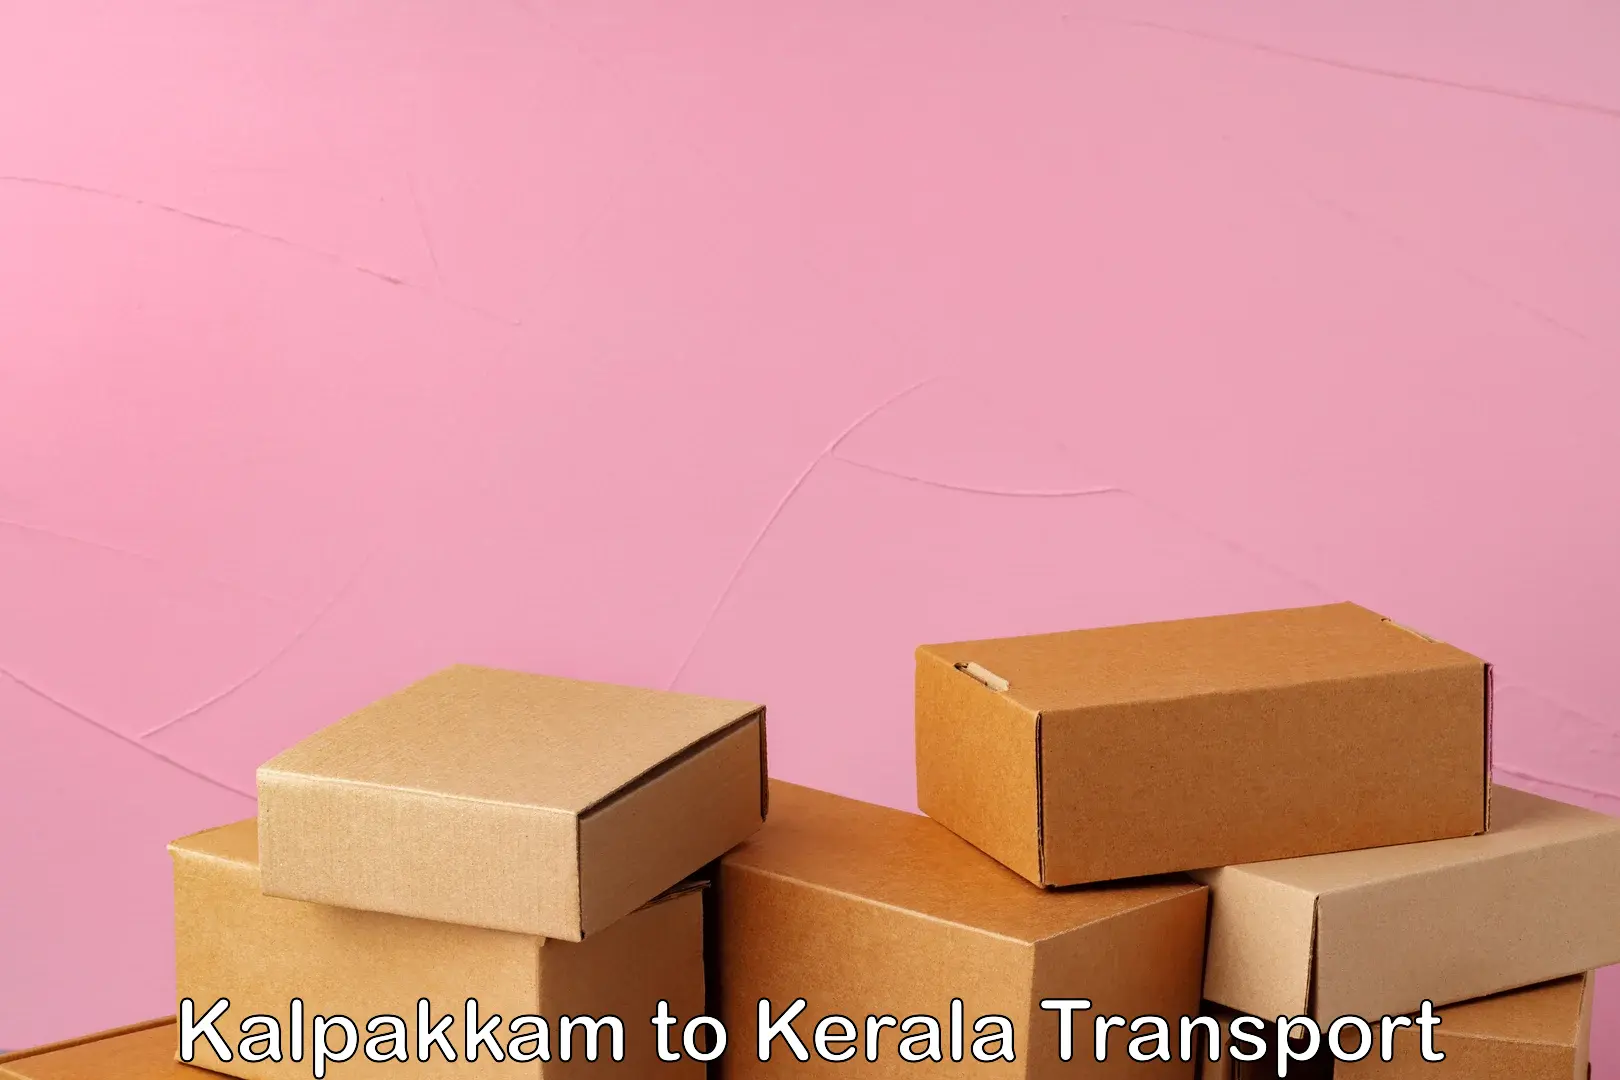 Domestic goods transportation services Kalpakkam to Kerala